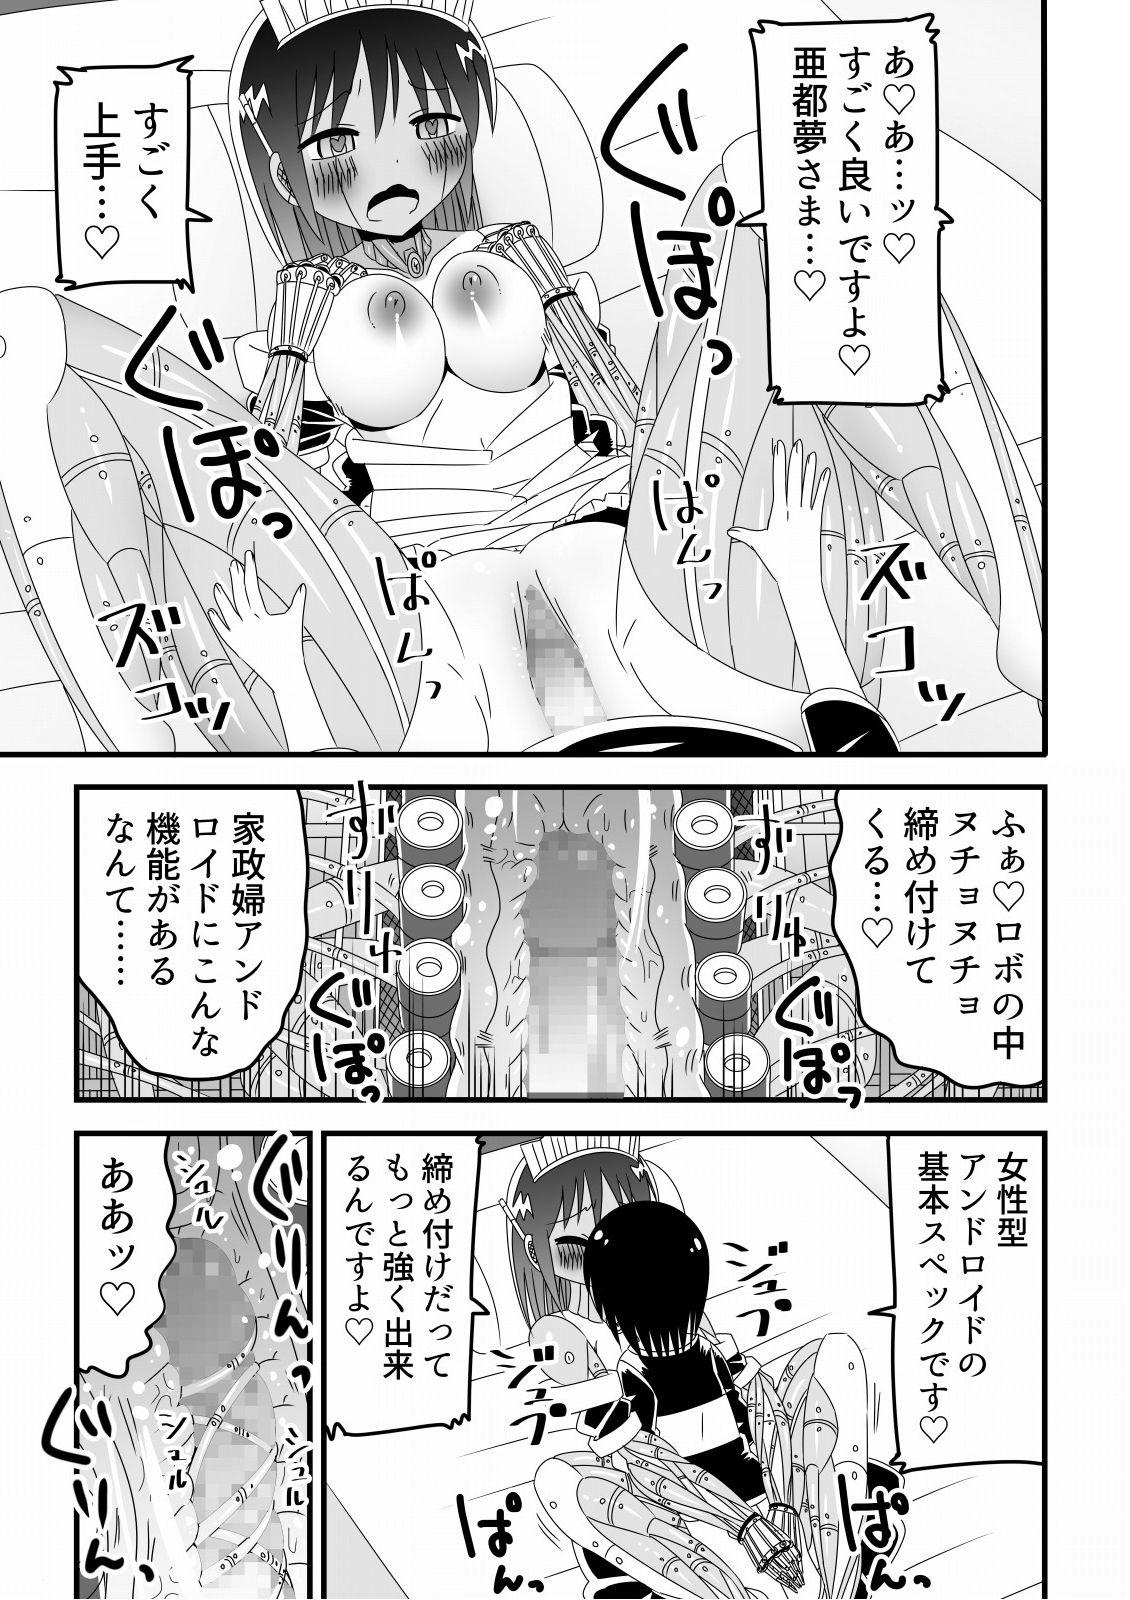 Jingai OneShota Manga Tsumeawase Shuu Vol. 1 32